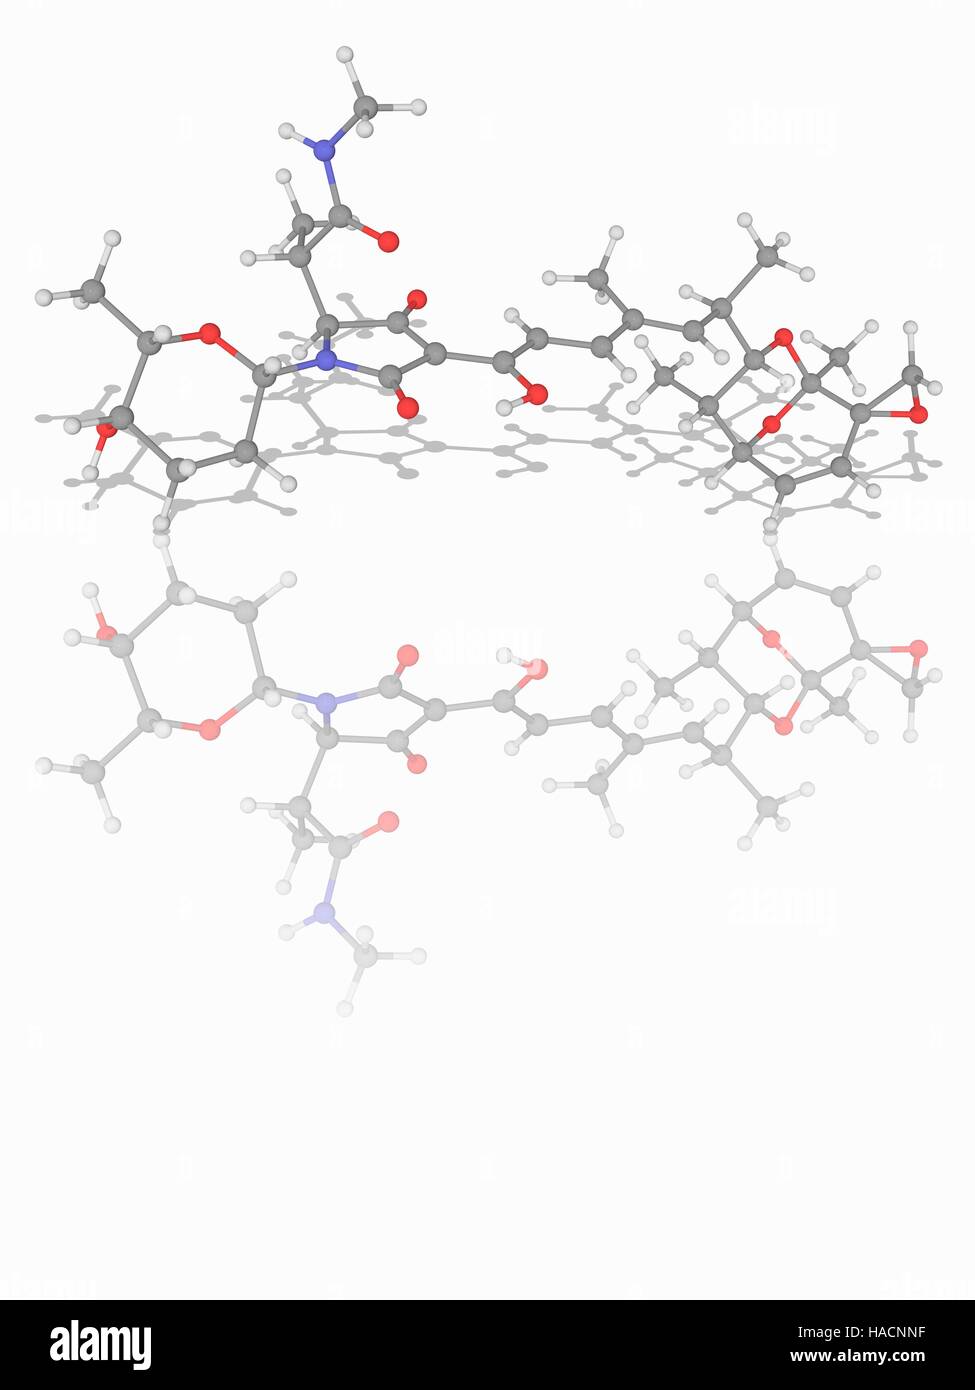 Streptolydigin. Il modello molecolare del farmaco antibiotico streptolydigin (C32.H44.N2.O9). Questo farmaco agisce bloccando un acido nucleico di allungamento di catena mediante il legame all'enzima polimerasi. È usato per il trattamento di infezioni da batteri Gram-positivi. Gli atomi sono rappresentati da sfere e sono codificati a colori: carbonio (grigio), Idrogeno (bianco), Azoto (blu) e ossigeno (rosso). Illustrazione. Foto Stock